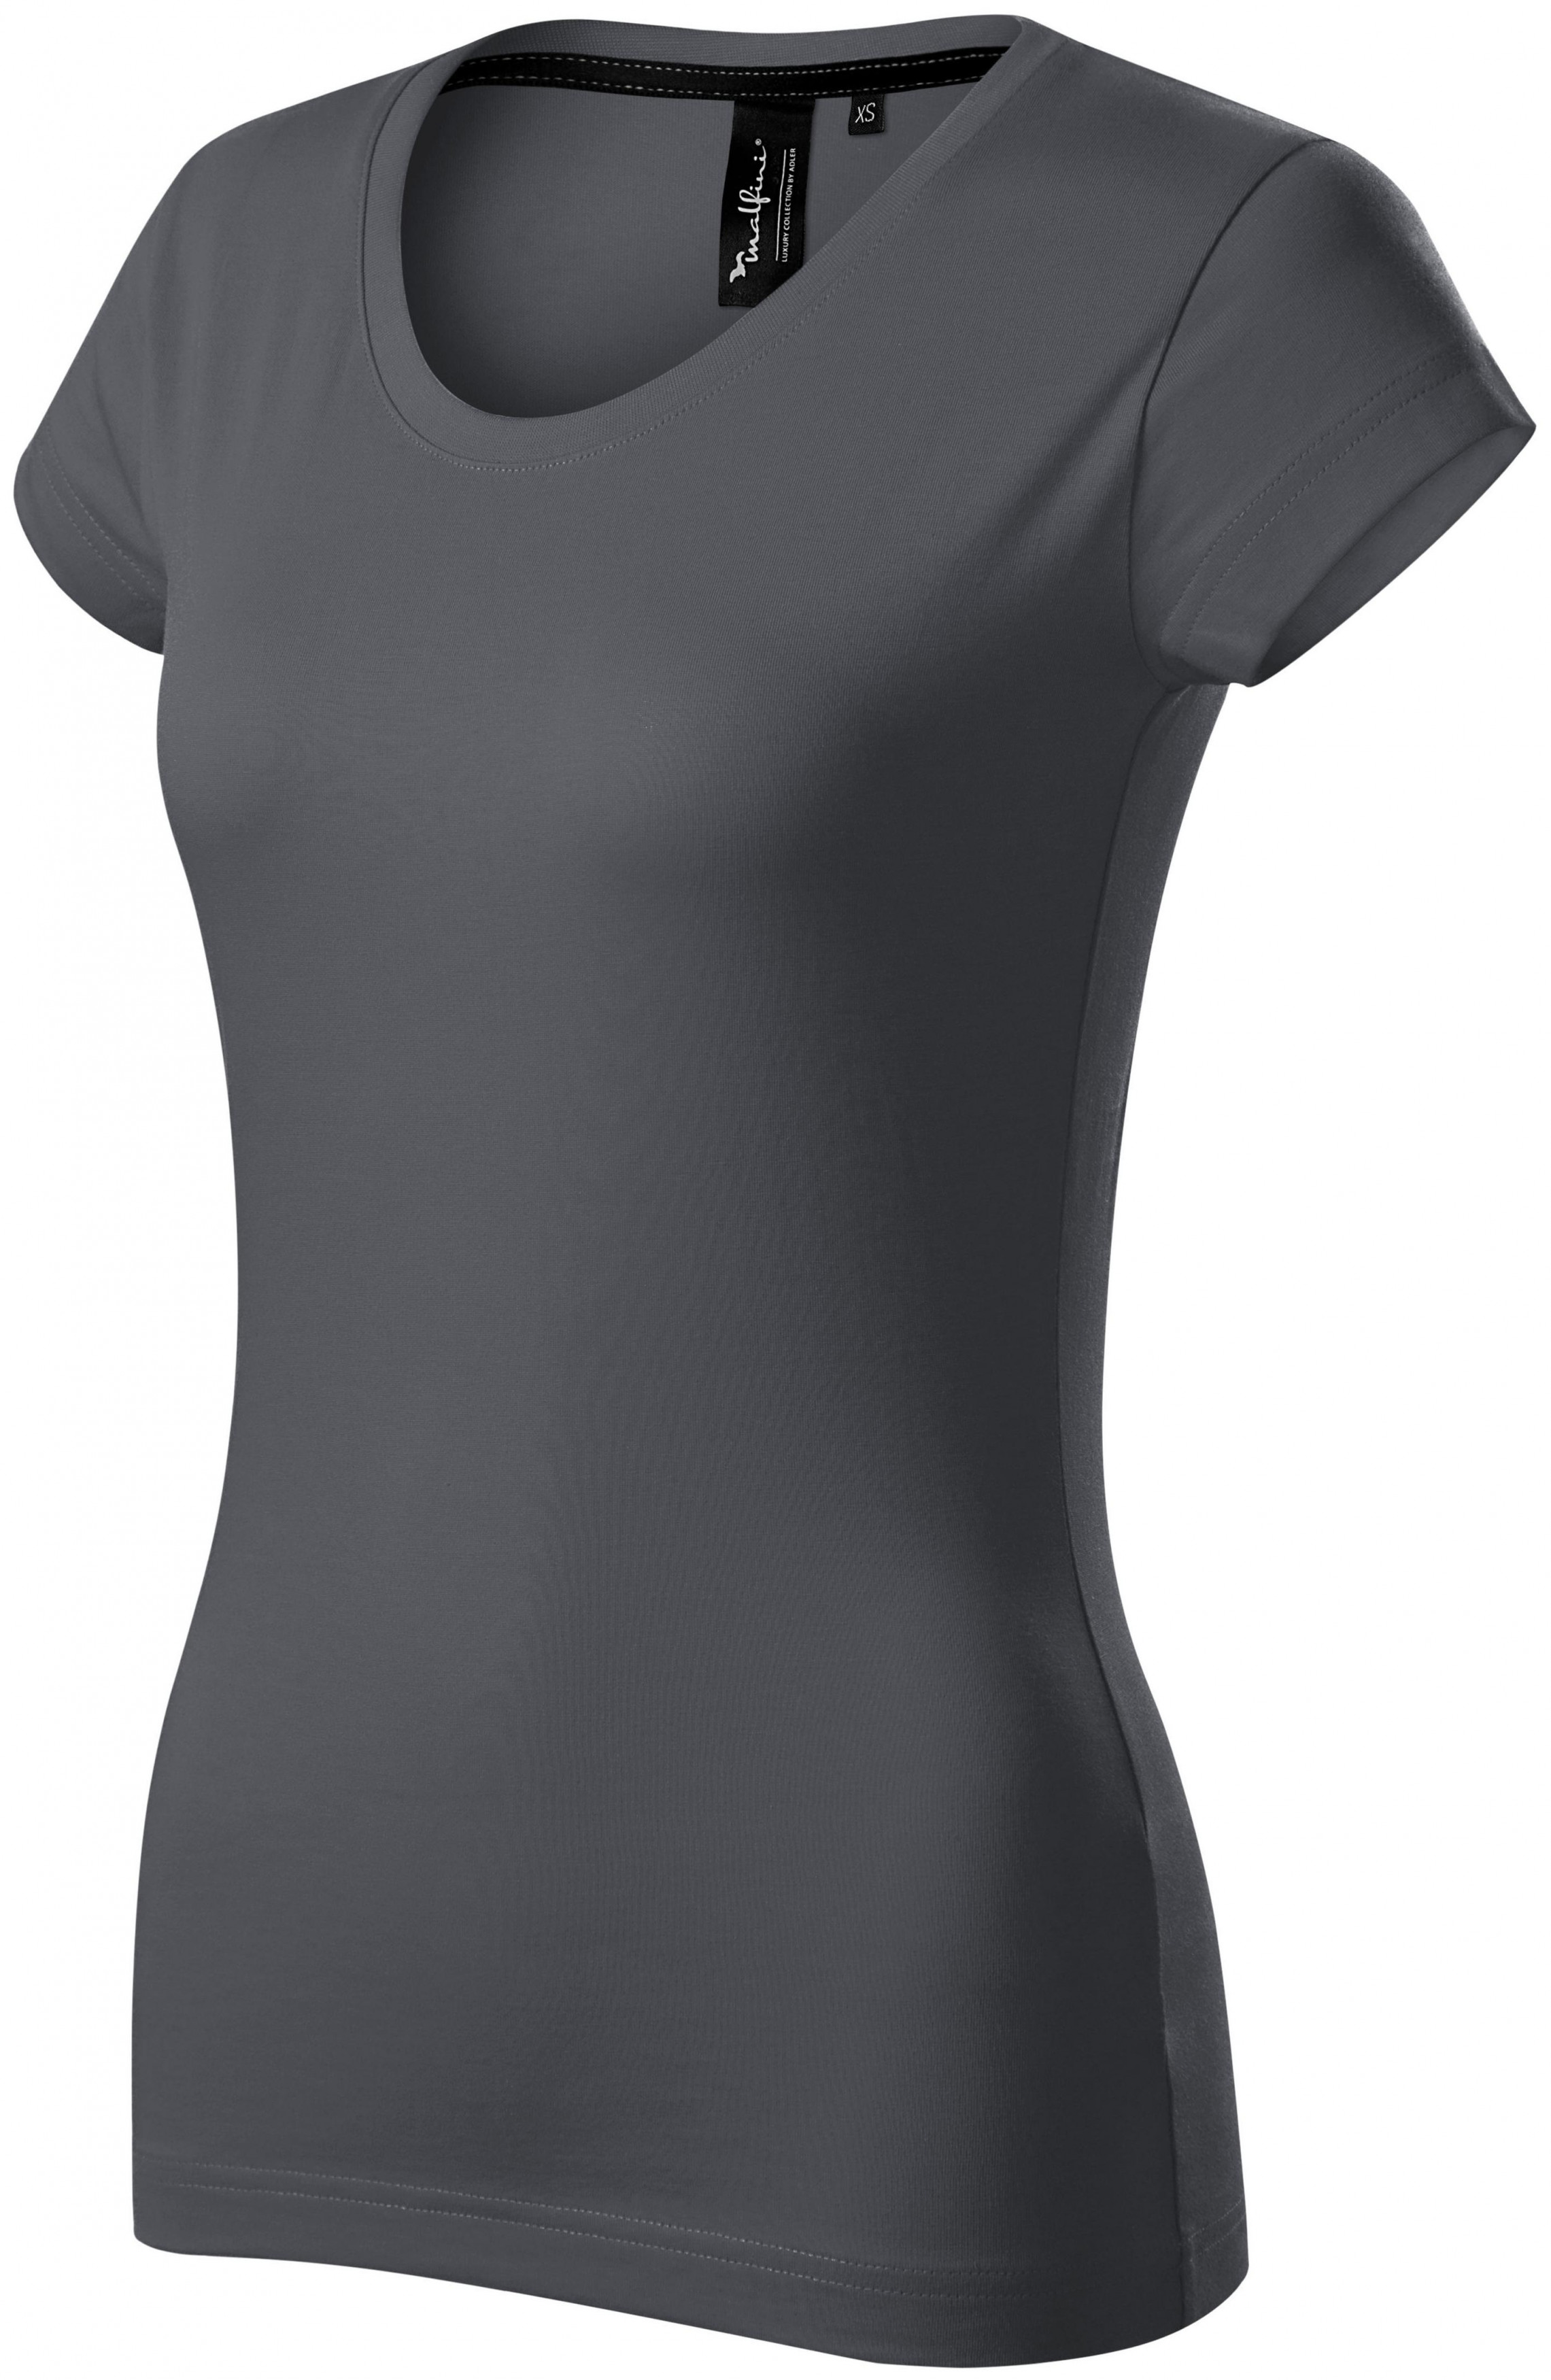 Exkluzívne dámske tričko, svetlo šedá, XL